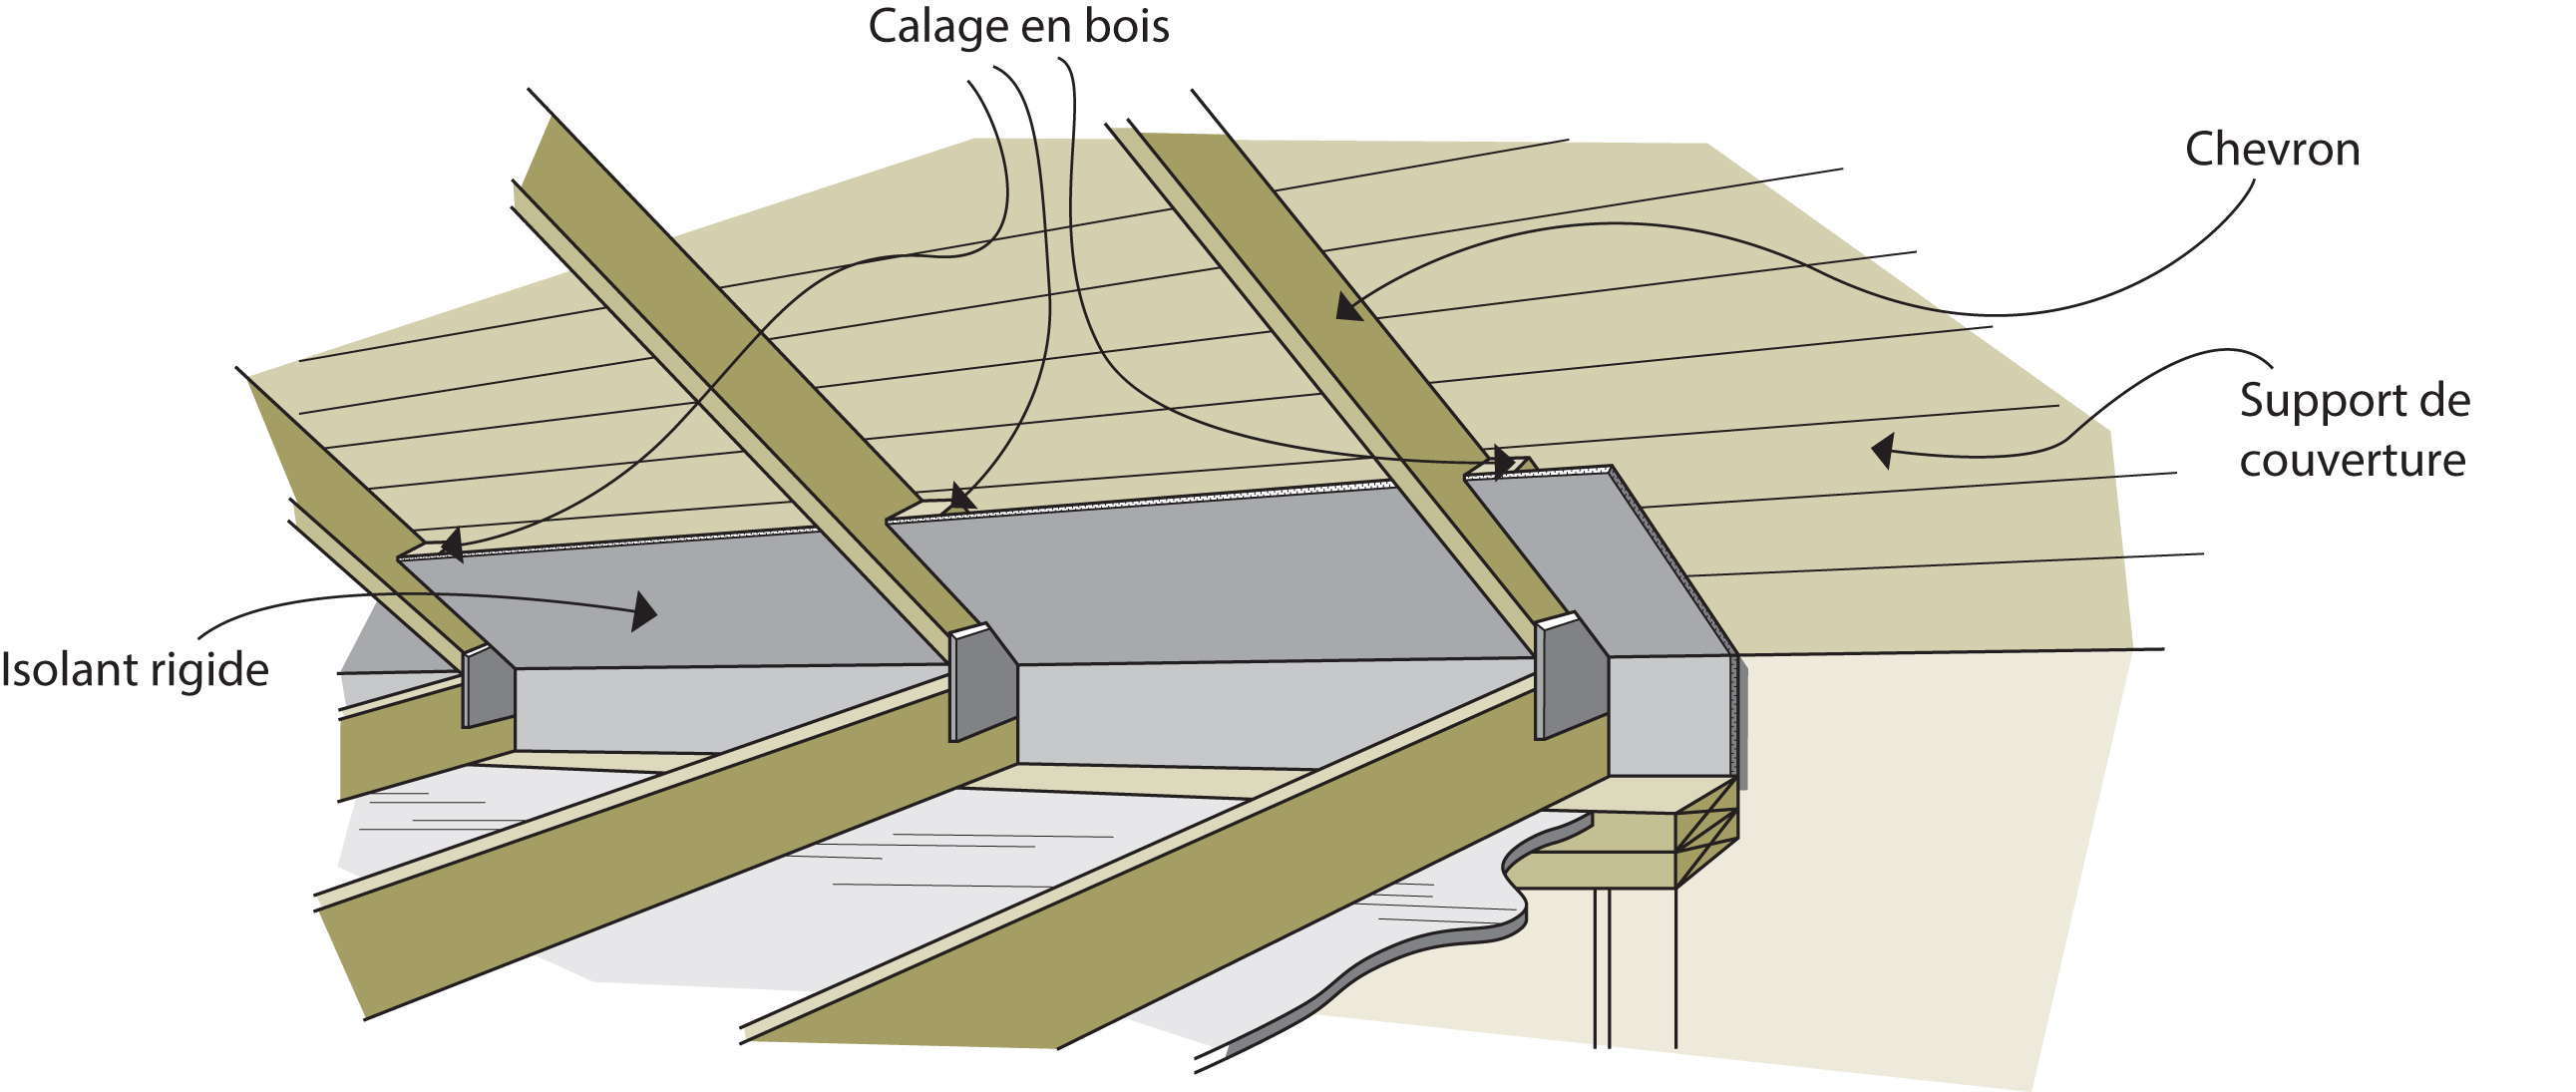 L'importance de la ventilation entre toit